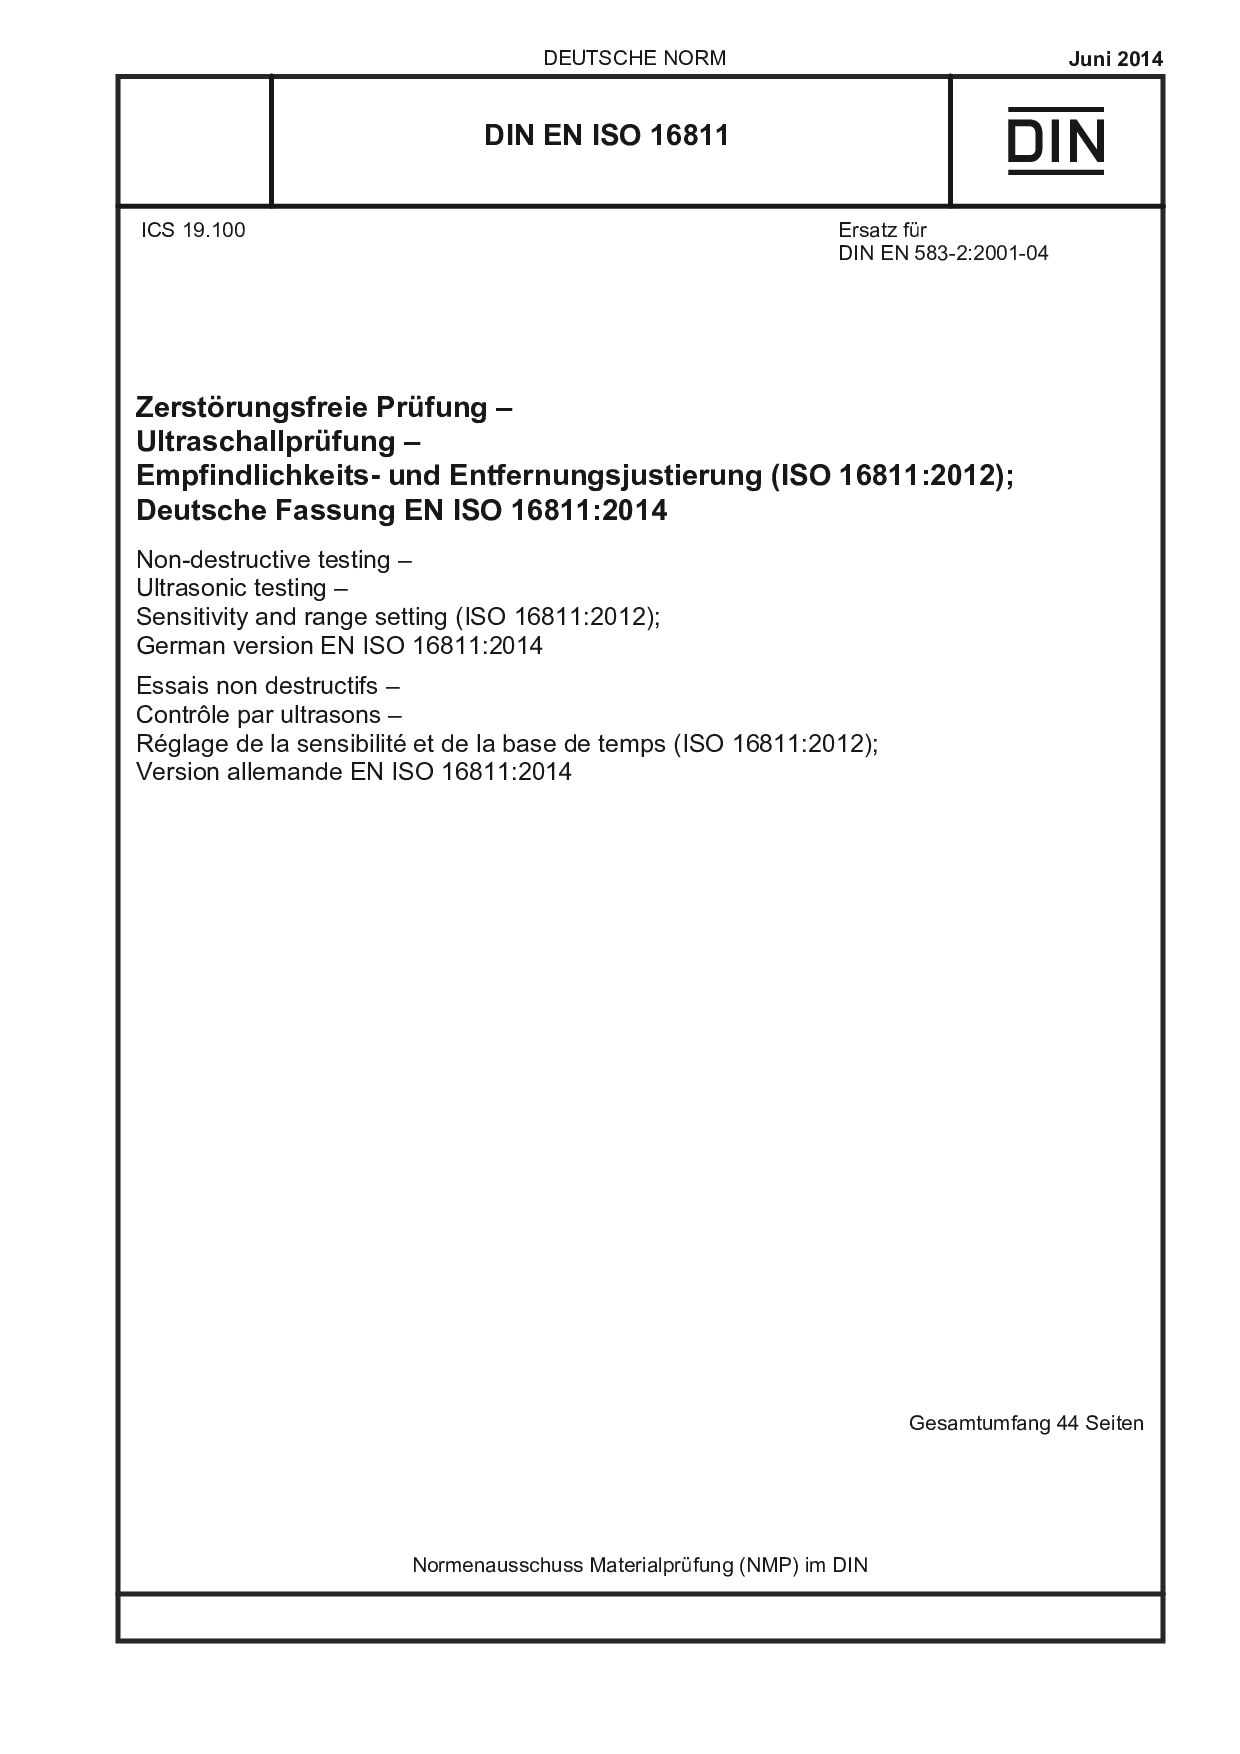 DIN EN ISO 16811:2014-06